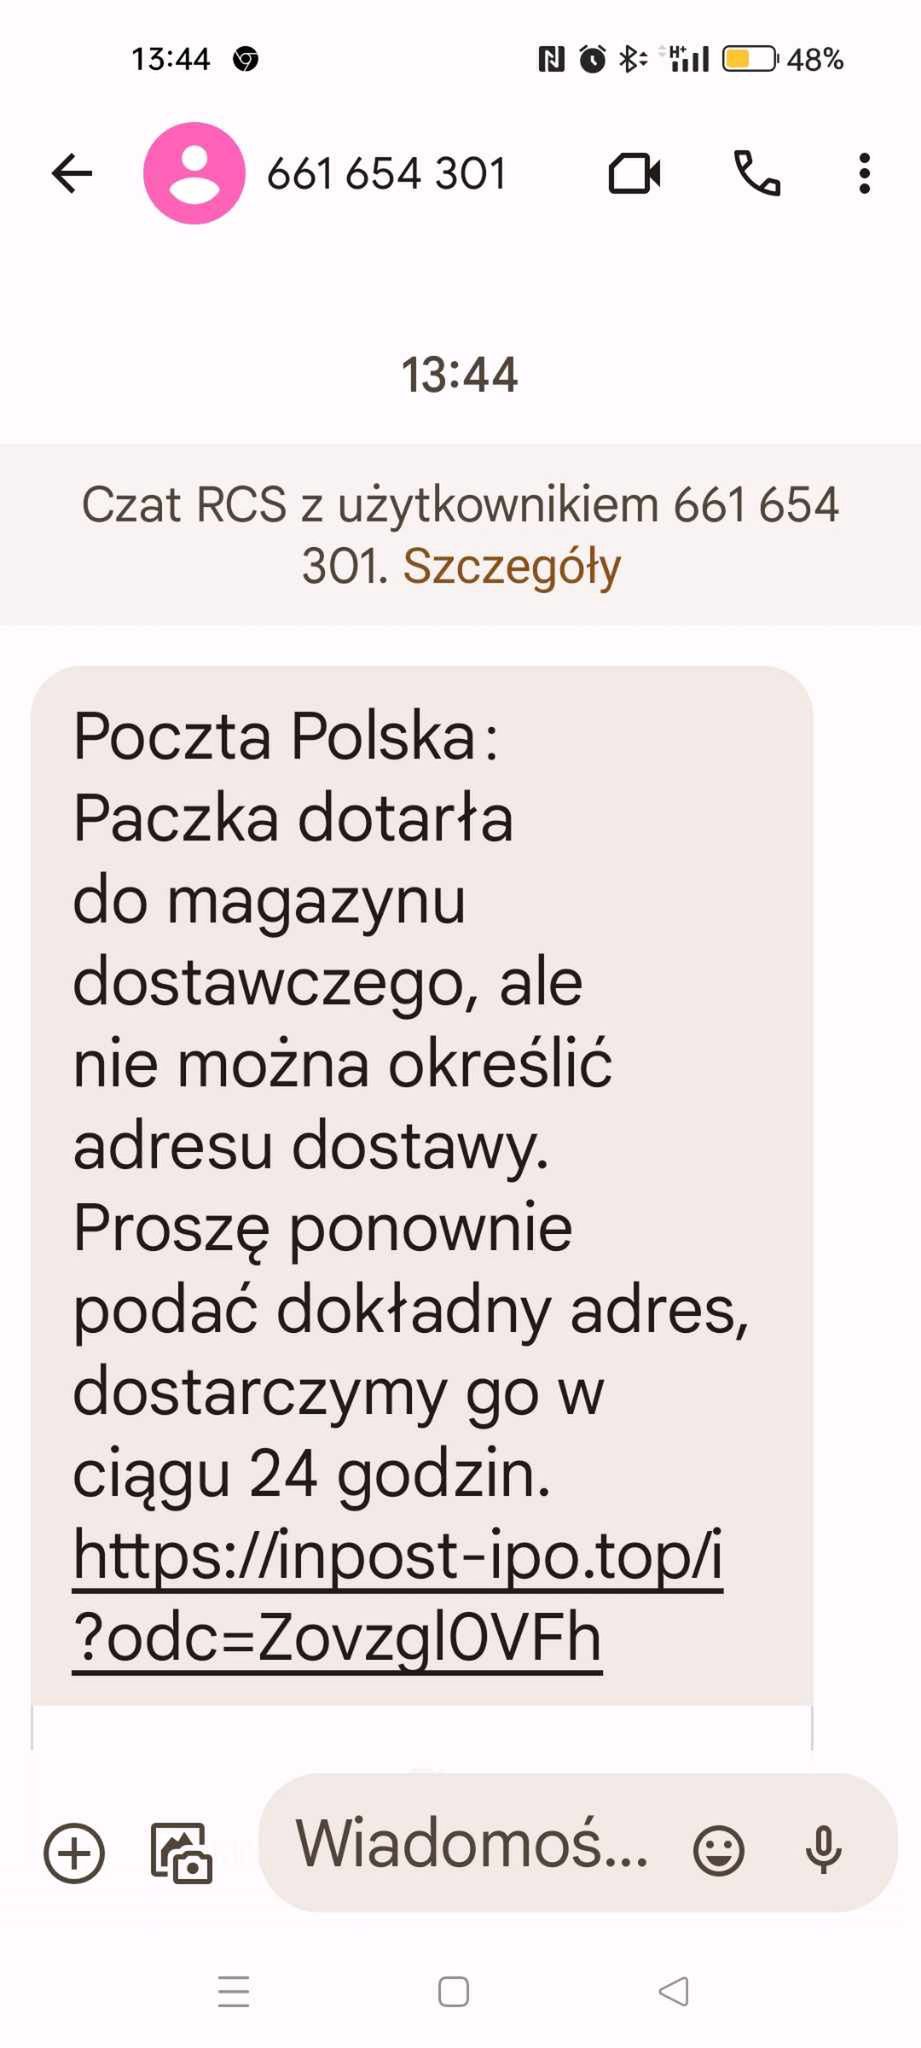 Fałszywa wiadomość "od Poczty Polskiej"